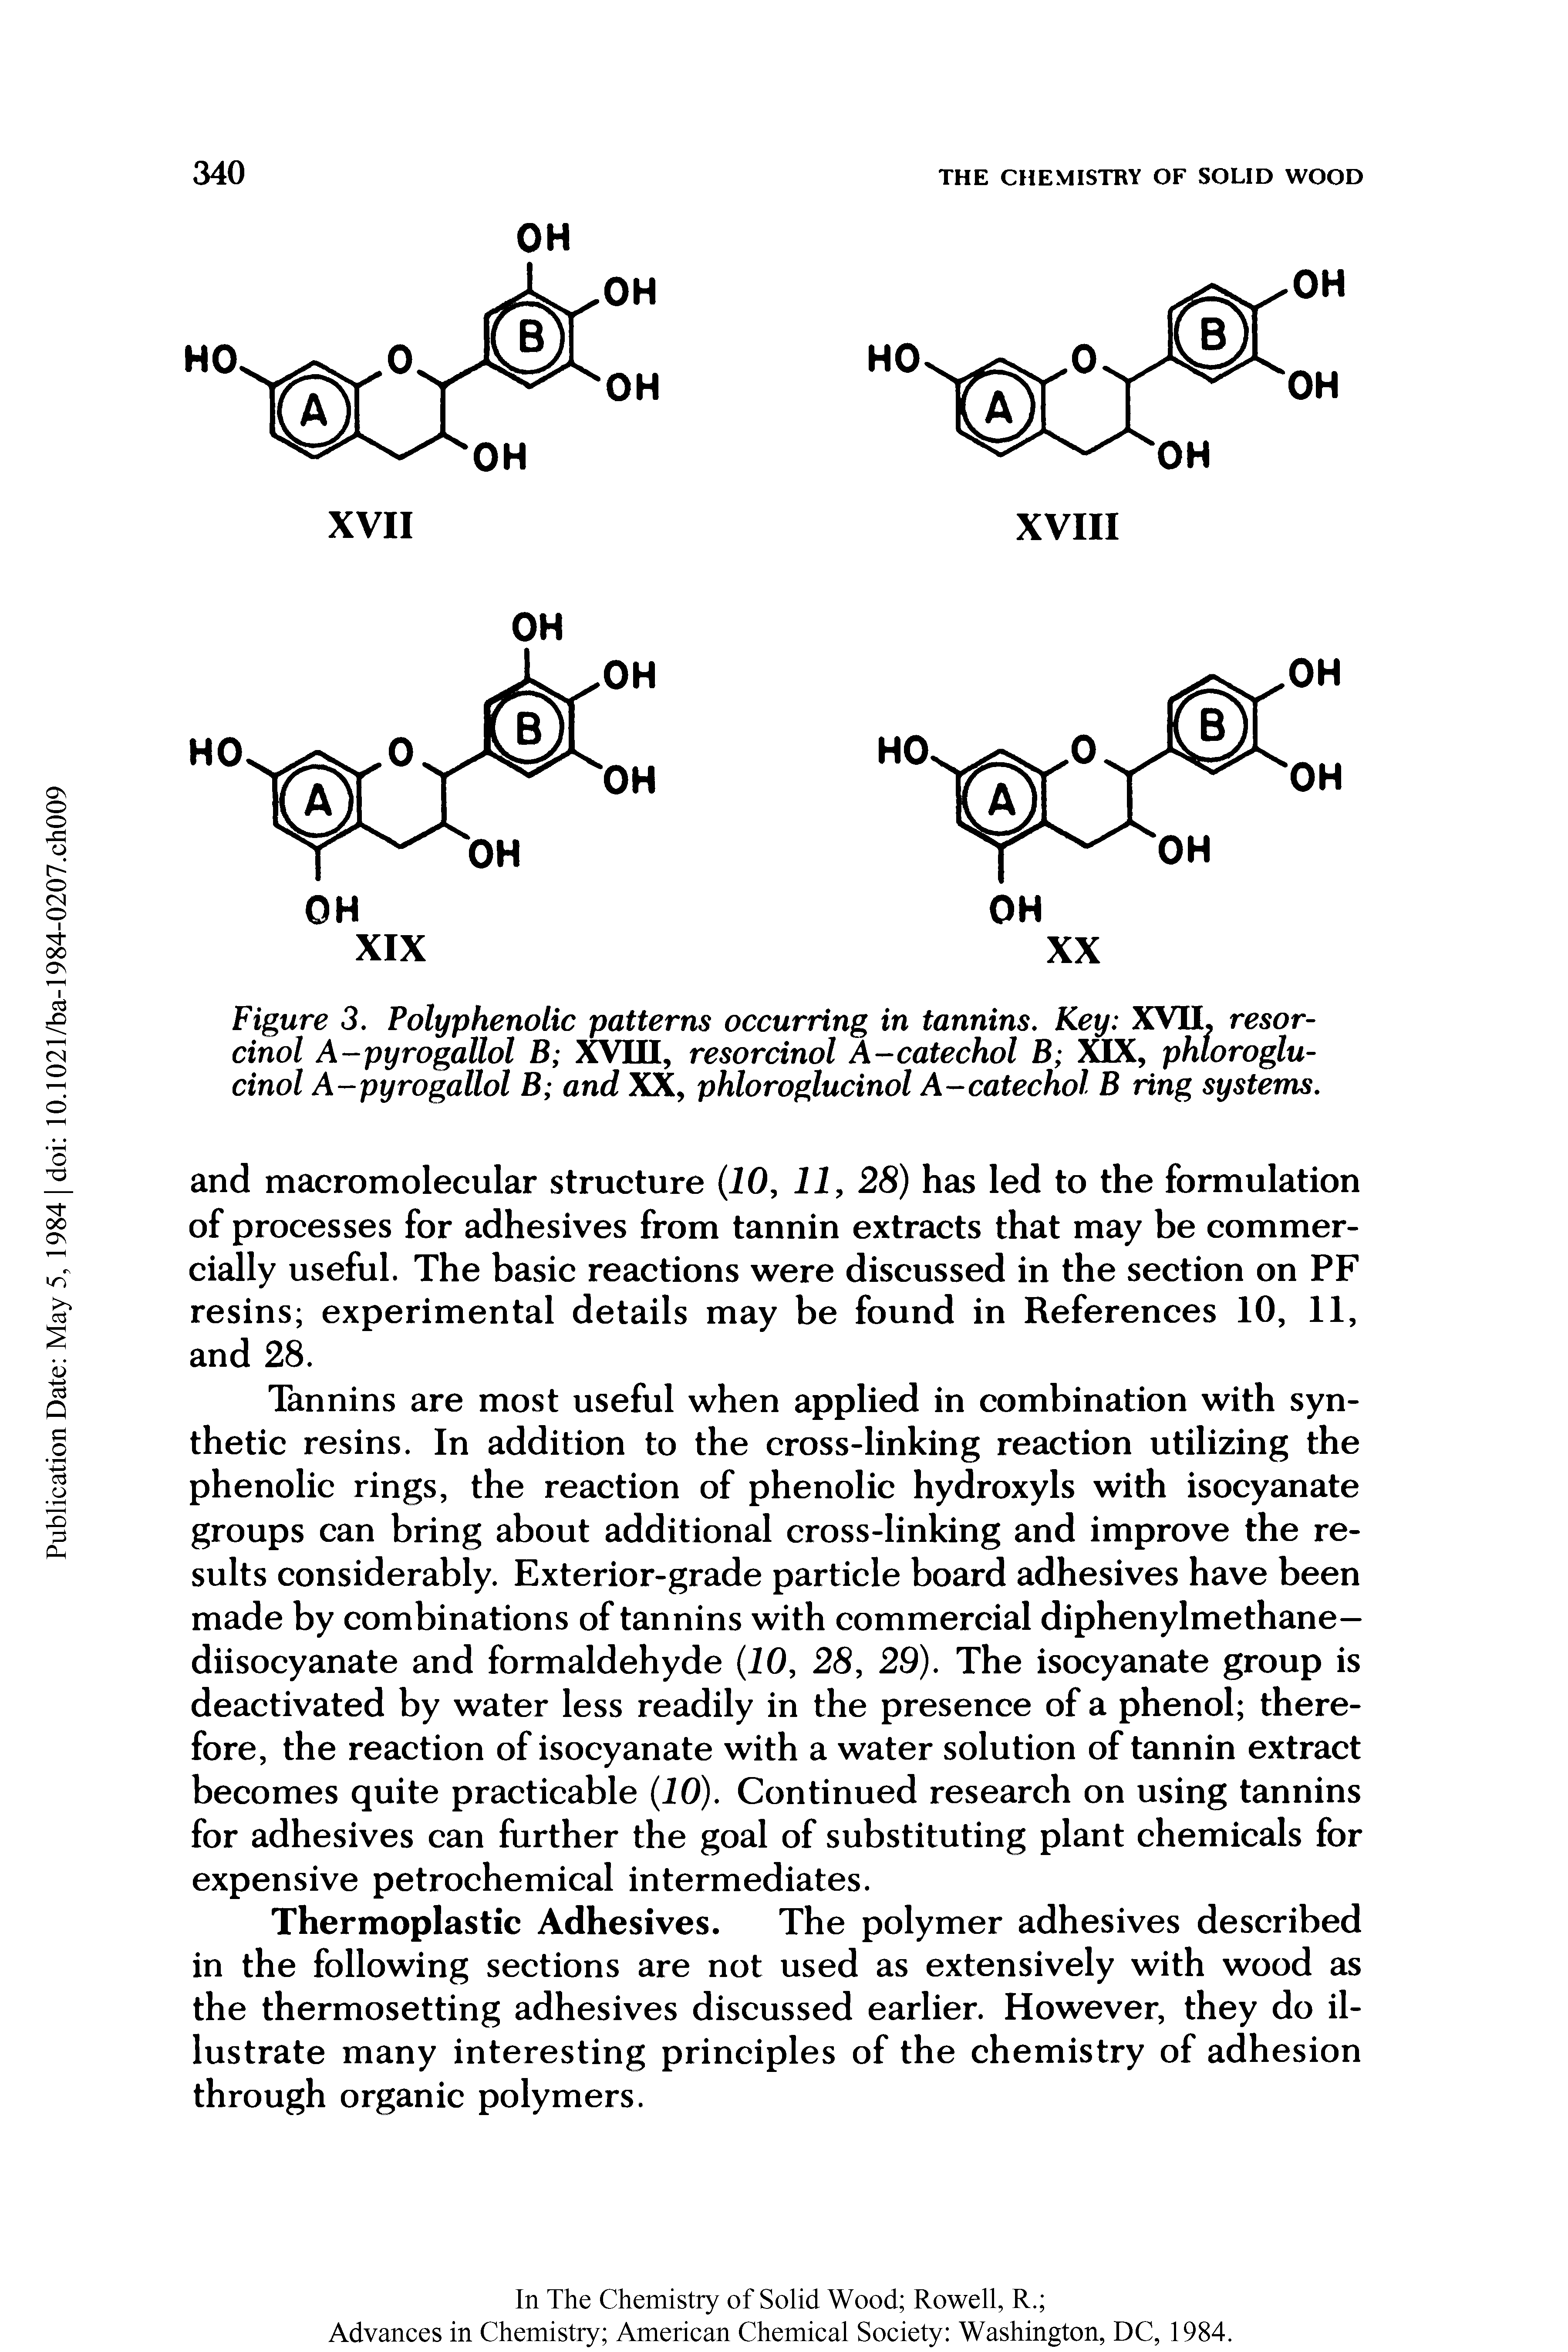 Figure 3. Polyphenolic patterns occurring in tannins. Key XVII, resorcinol A-pyrogallol B XVIII, resorcinol A-catechol B XIX, phtoroglu-cinol A-pyrogallol B and XX, phloroglucinol A-catechol B ring systems.